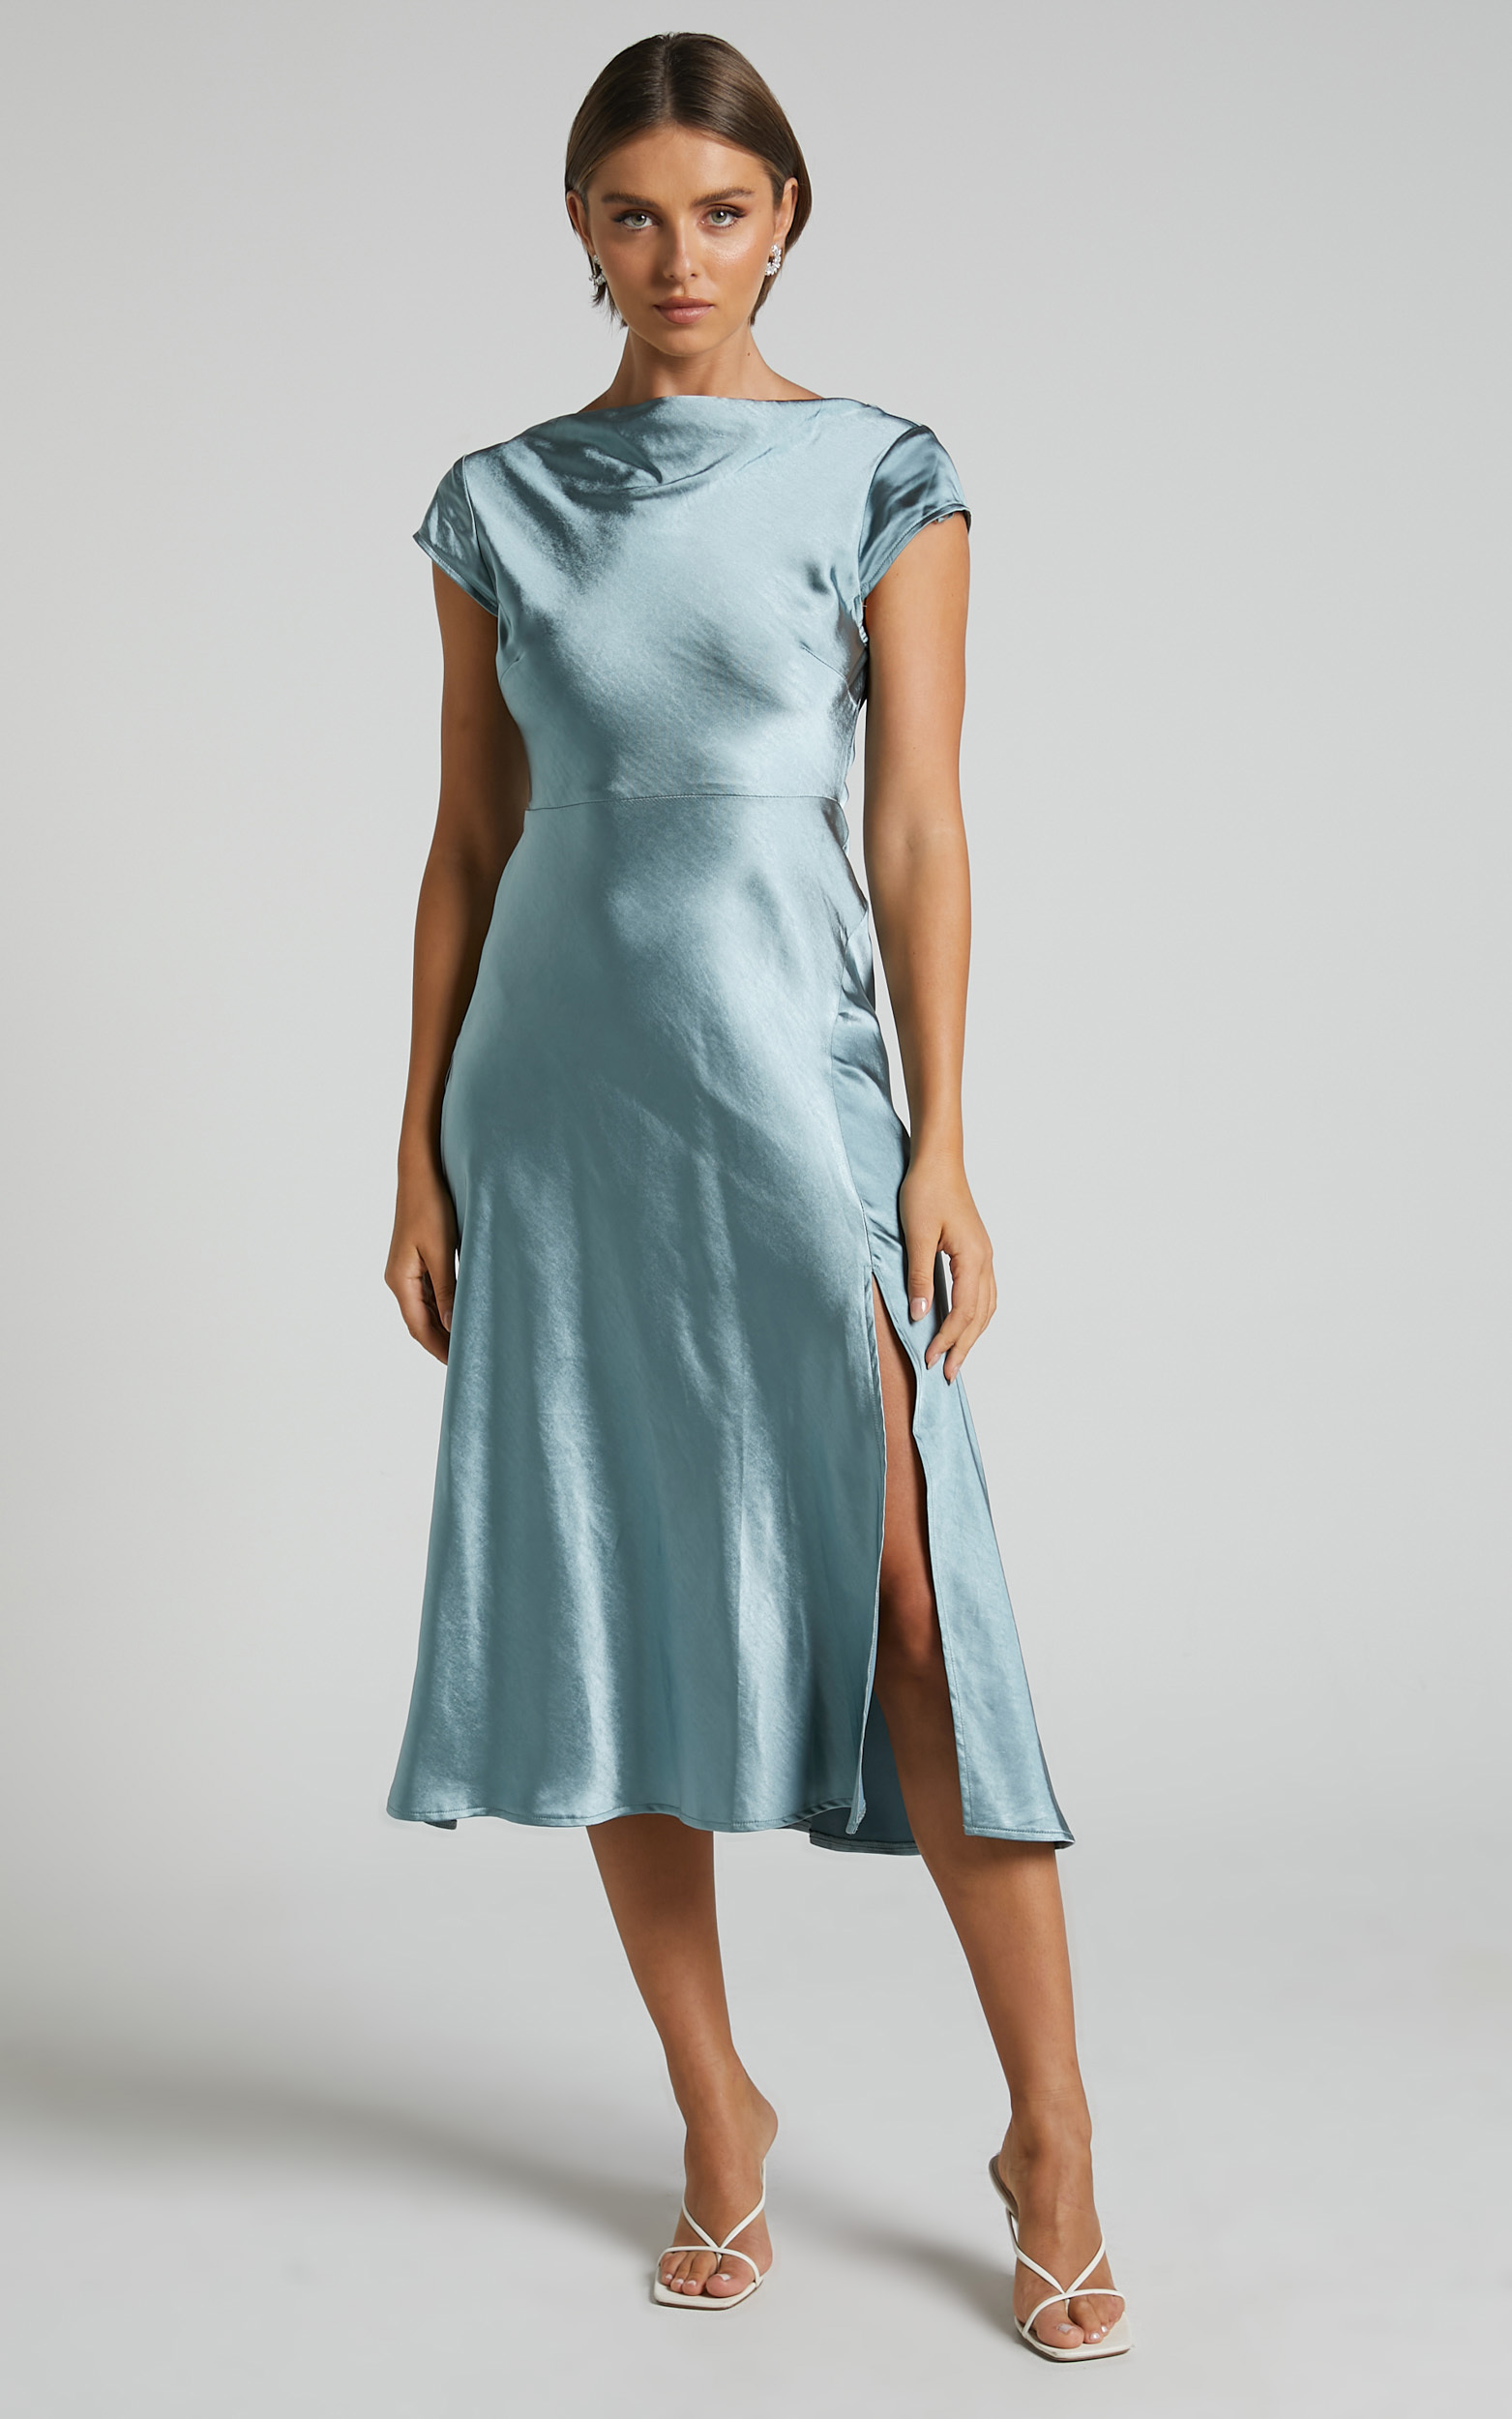 Vesper Midi Dress - Back Cut Out High Neck Satin Dress in Ice Blue - 06, BLU1, hi-res image number null